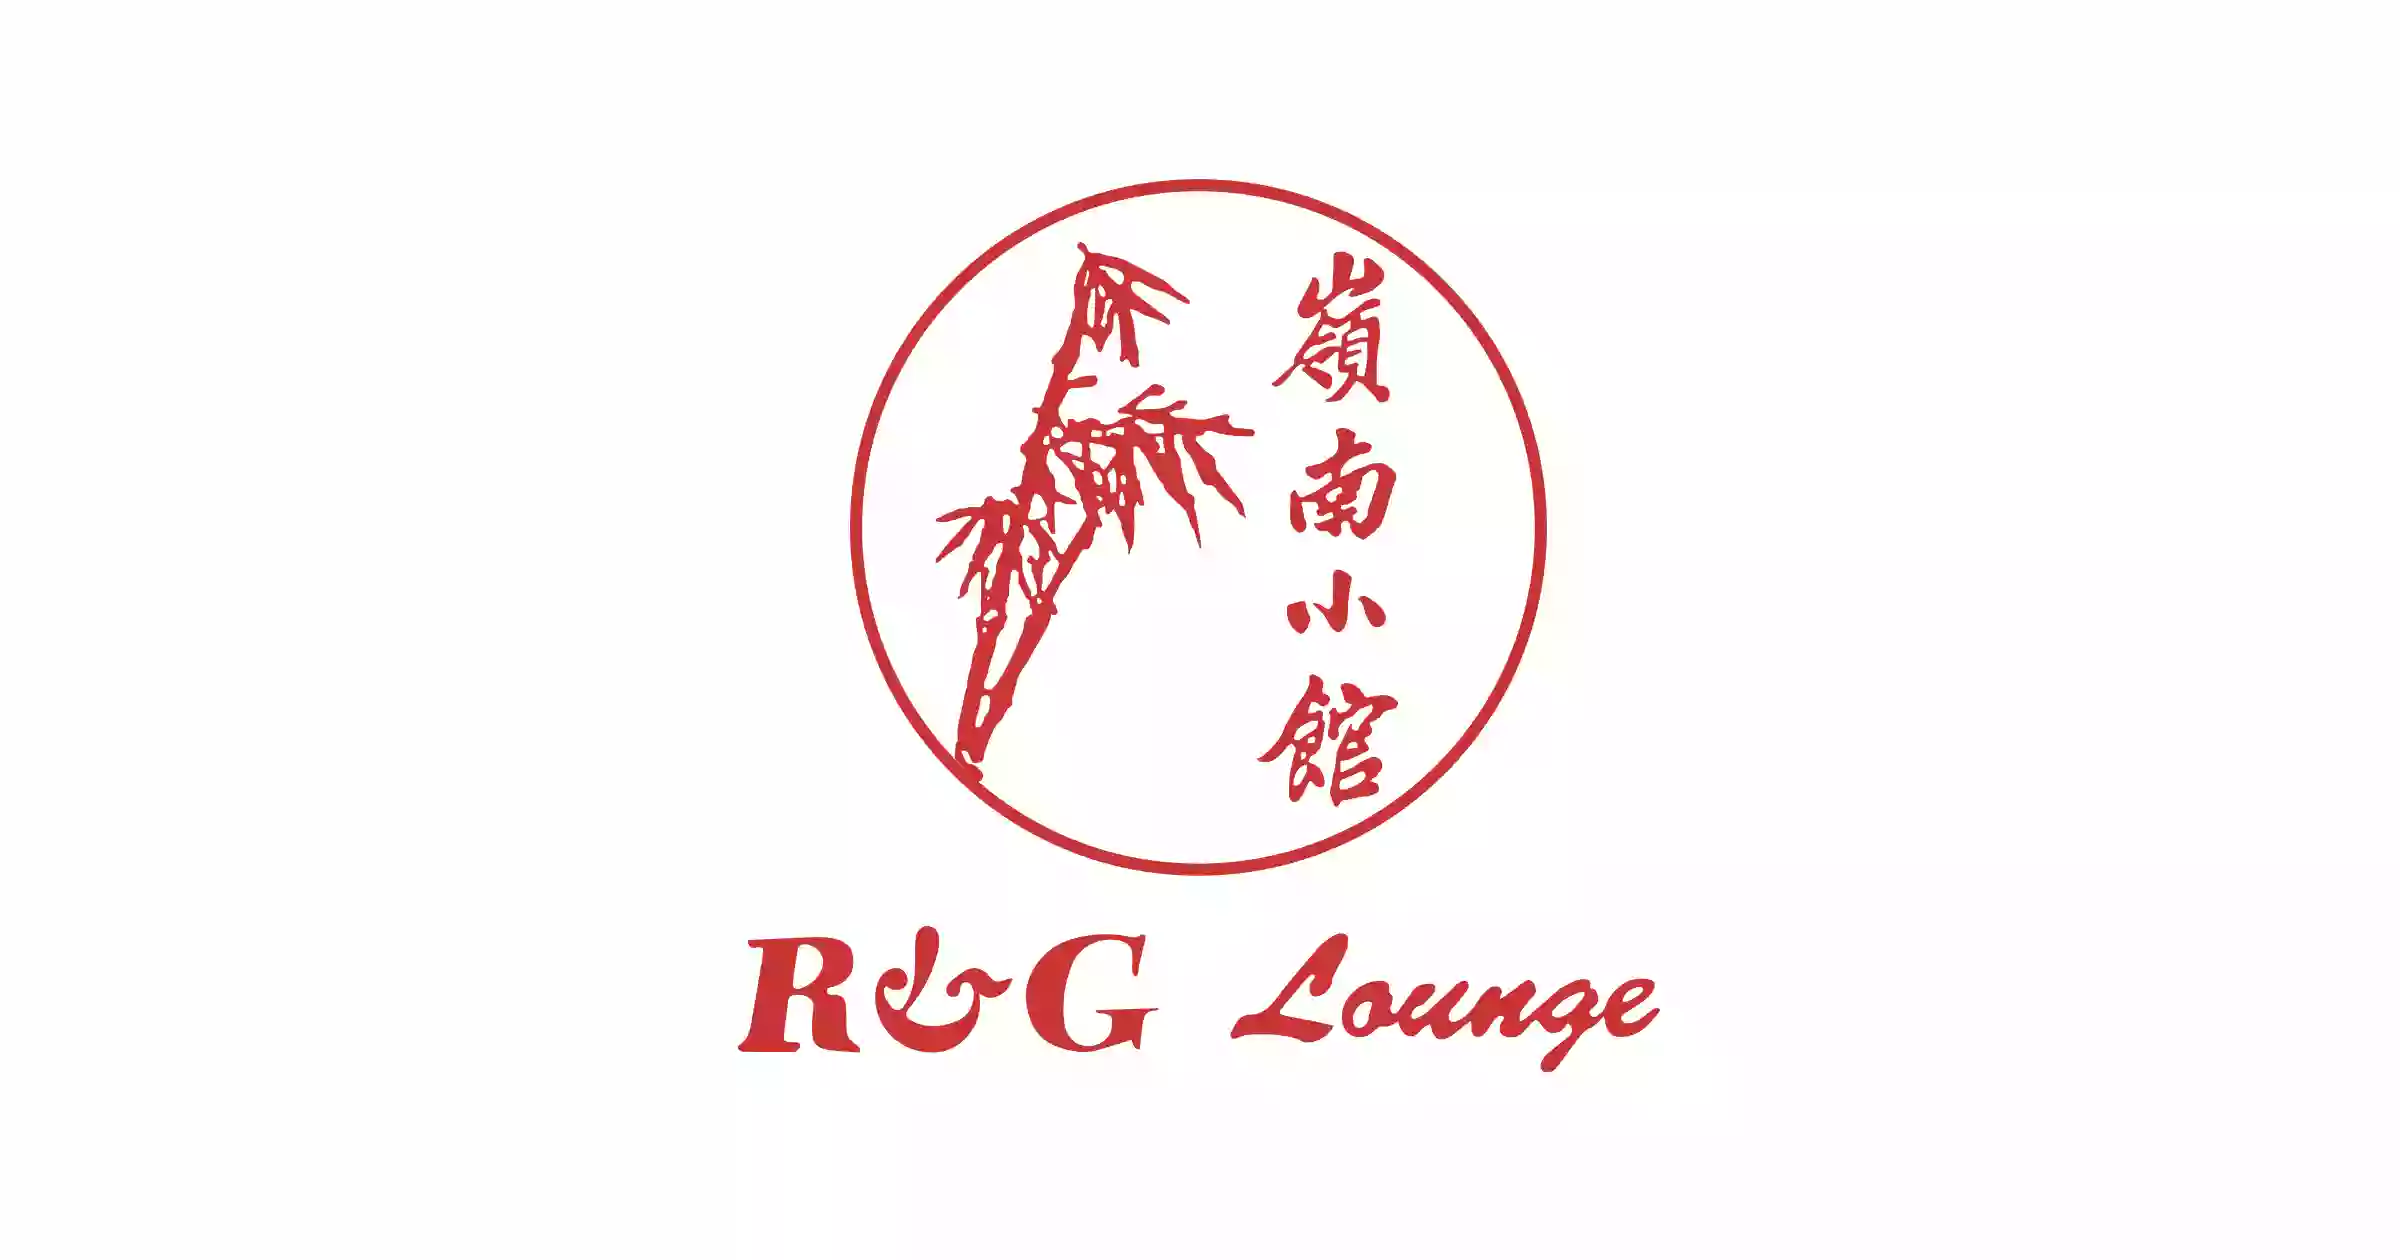 R & G Lounge